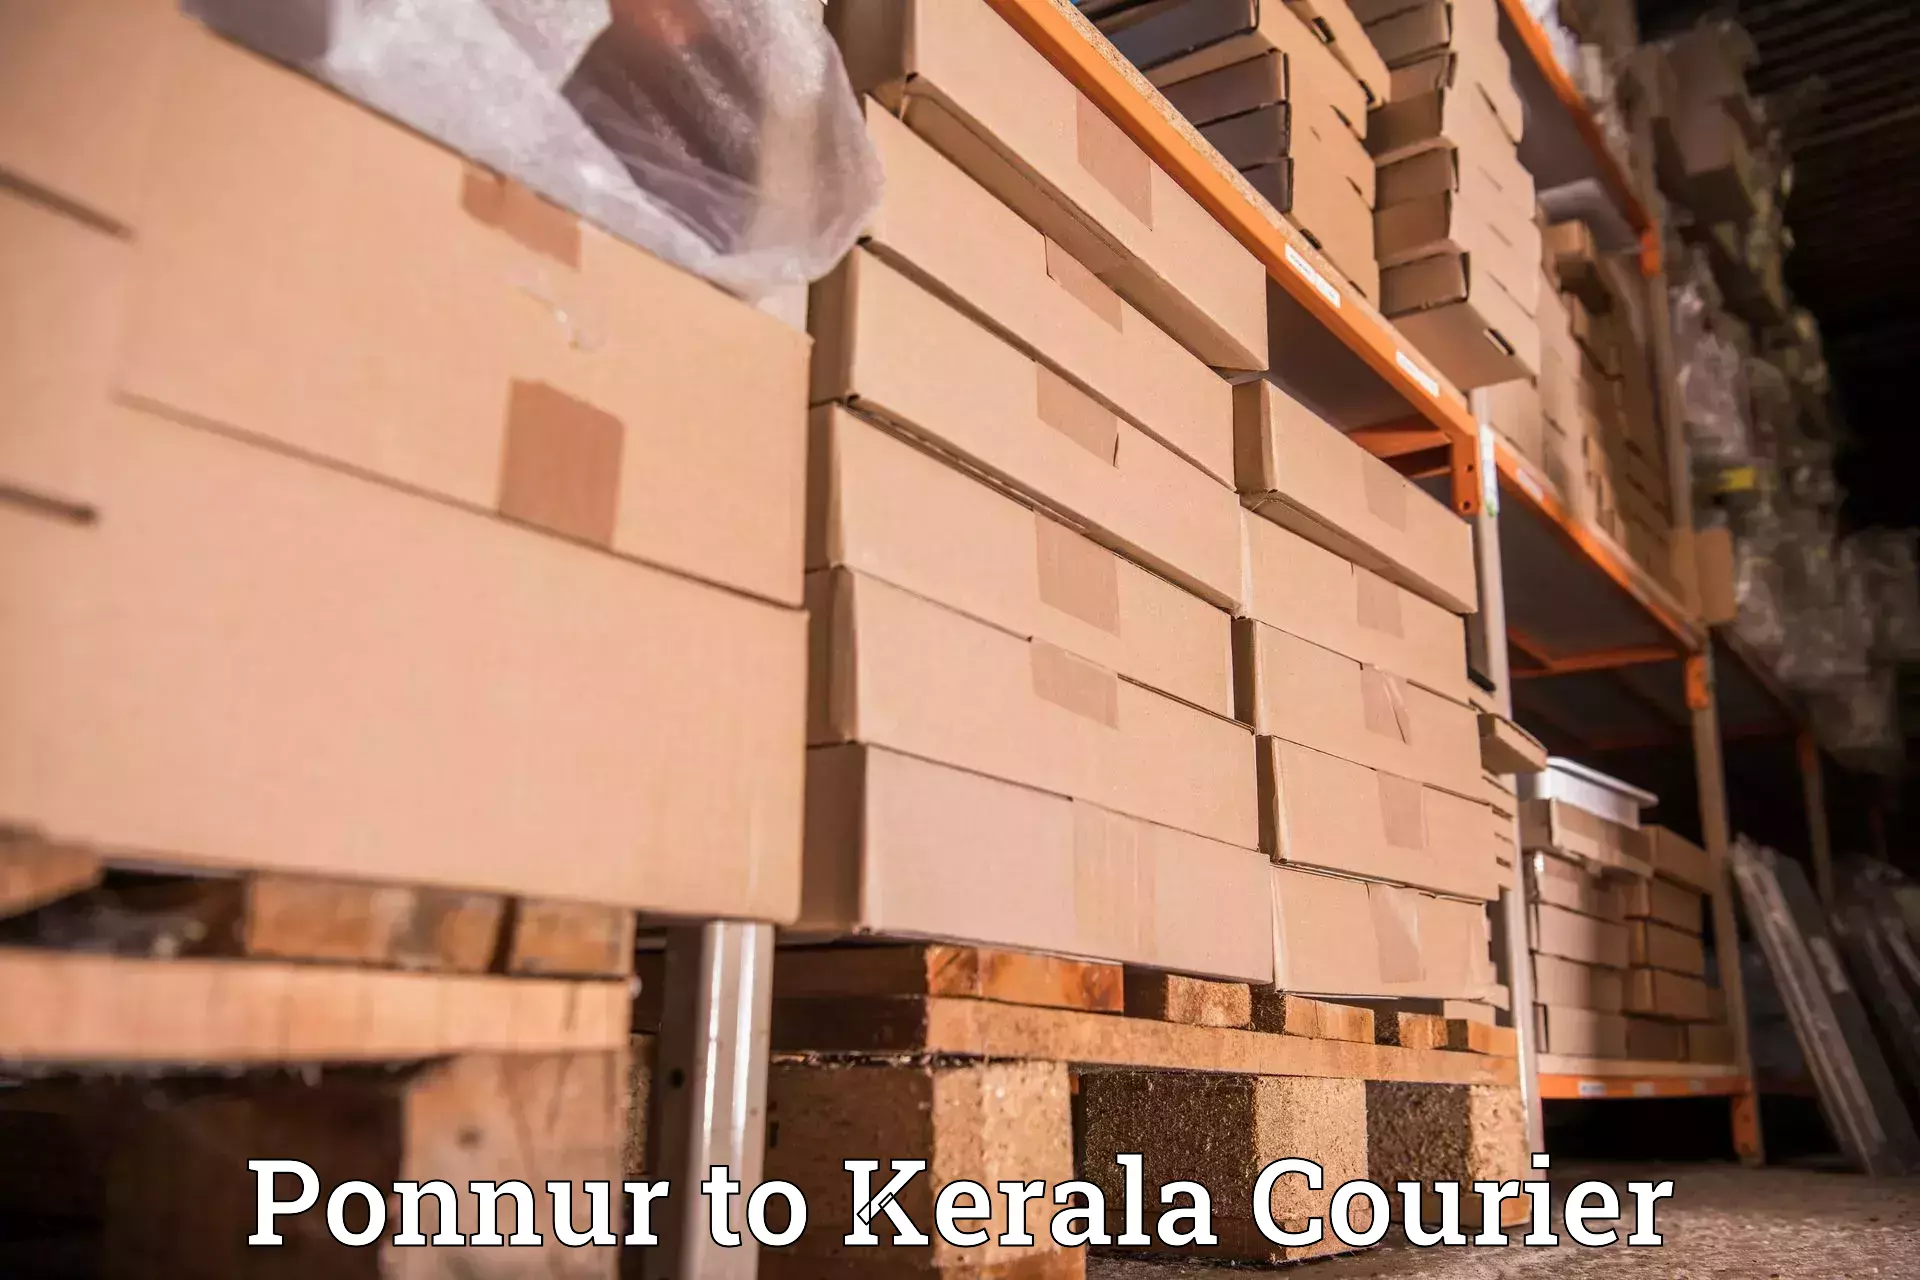 Courier service comparison Ponnur to Adoor